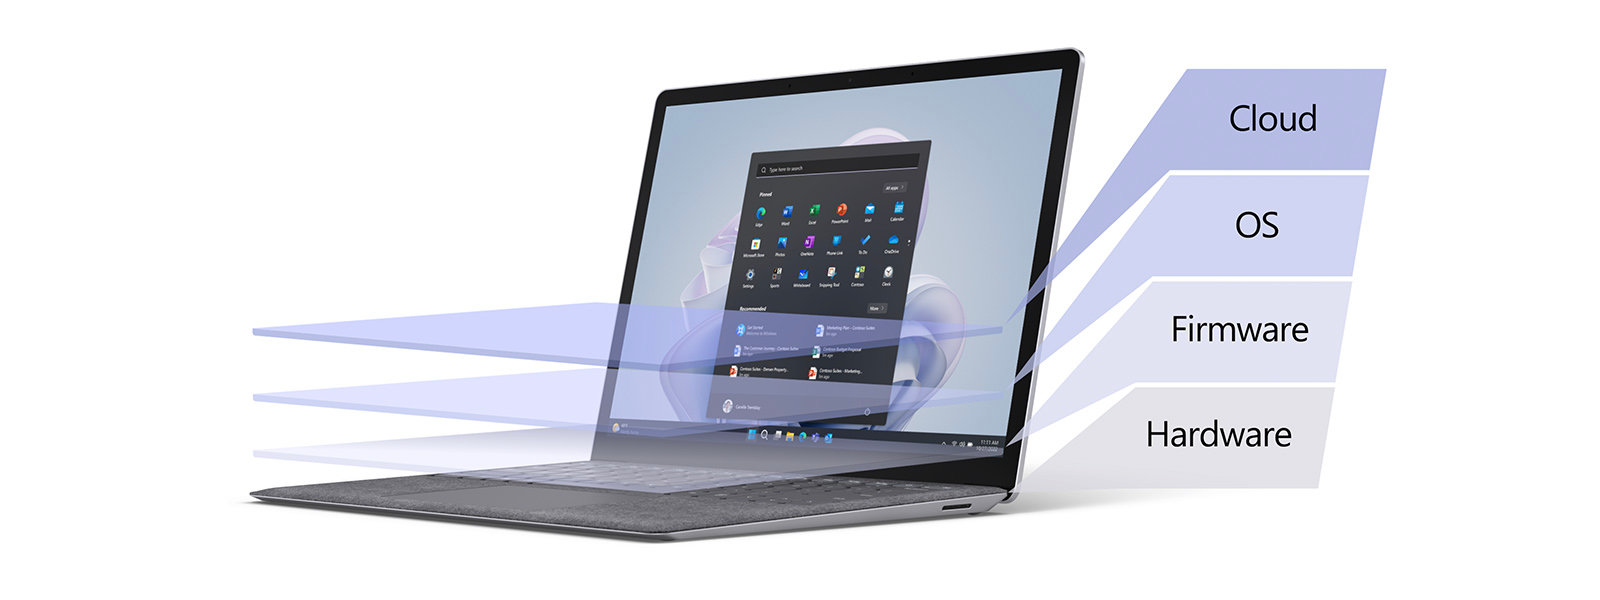 جهاز كمبيوتر محمول Surface laptop مغطى بتدرج لوني يمثل طبقات مختلفة من الأمان